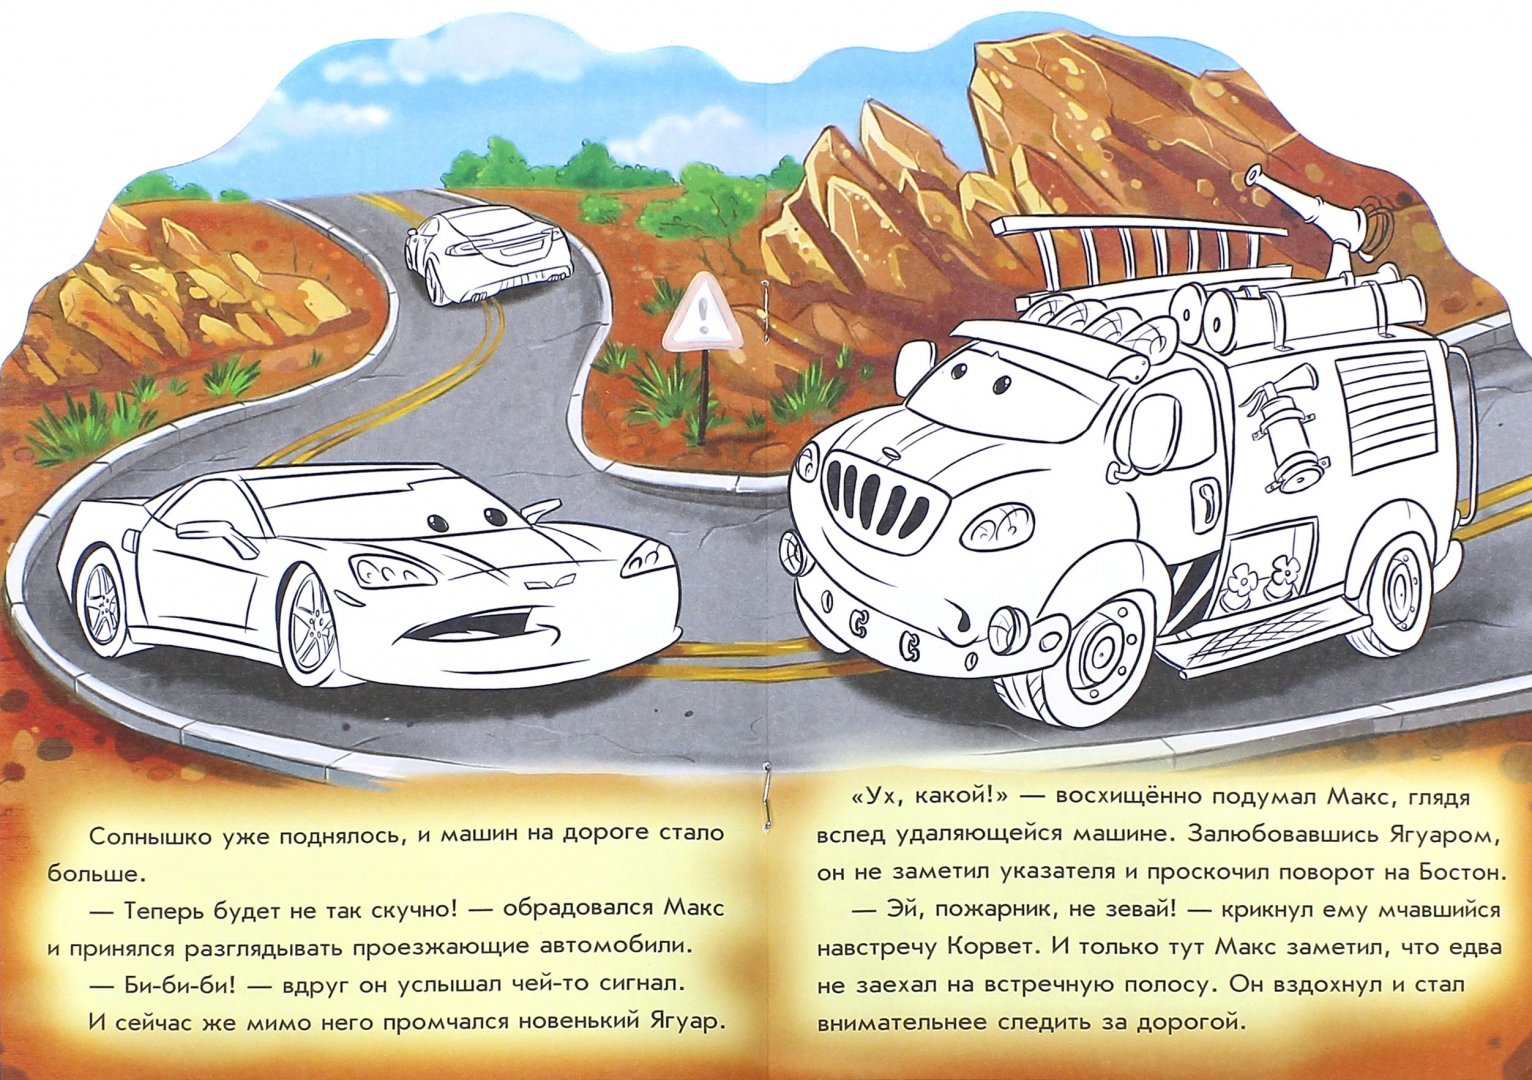 Иллюстрация 1 из 2 для Приключения пожарного автомобиля - Е. Новицкий | Лабиринт - книги. Источник: Лабиринт